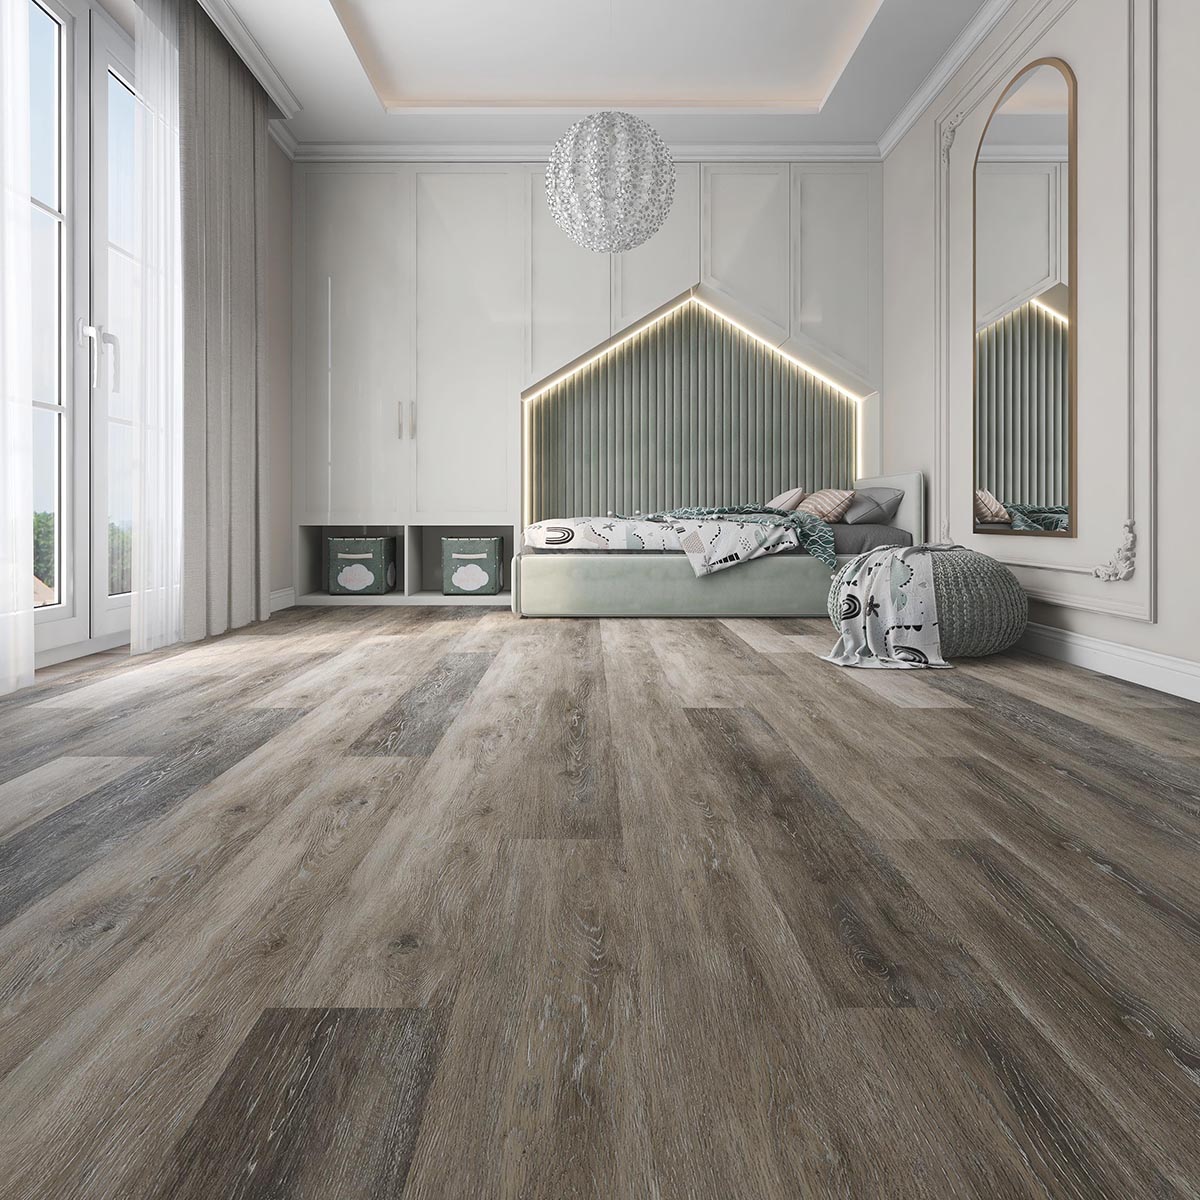 New Arrival China Spc Floor Tiles -
 100% Waterproof Flooring – TopJoy